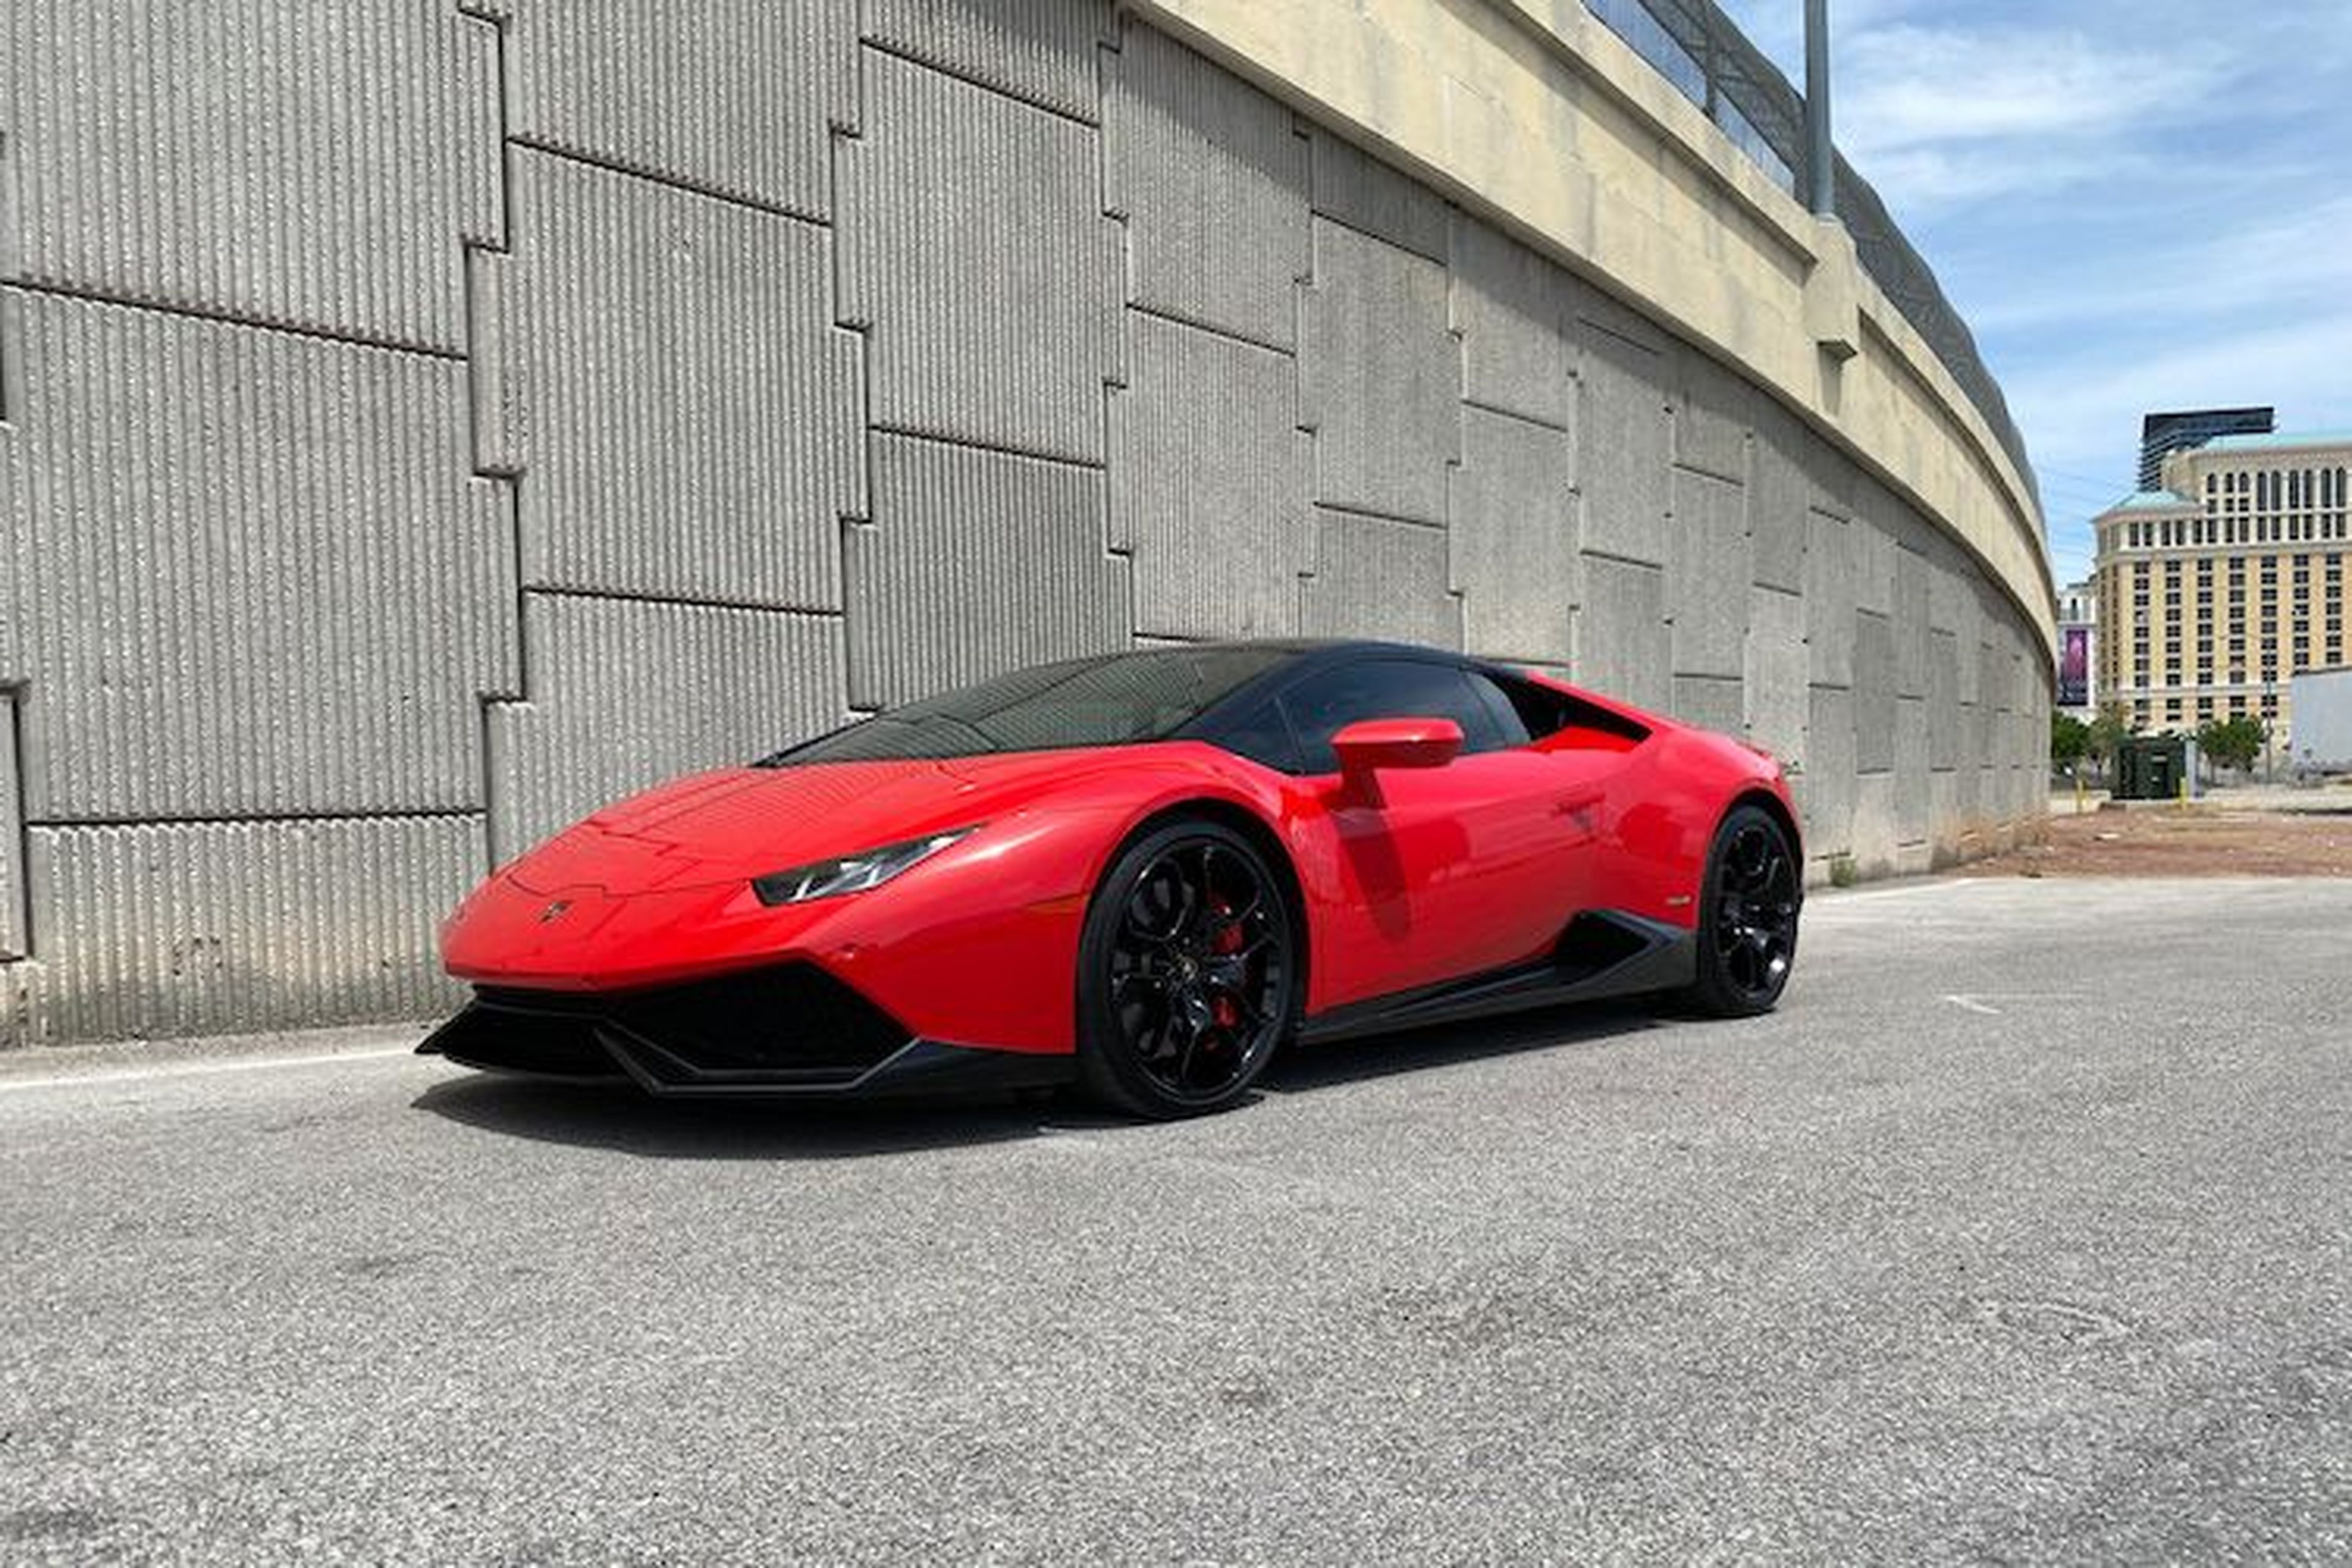 Lamborghini no volverá a participar en los salones de automóviles |  Computer Hoy